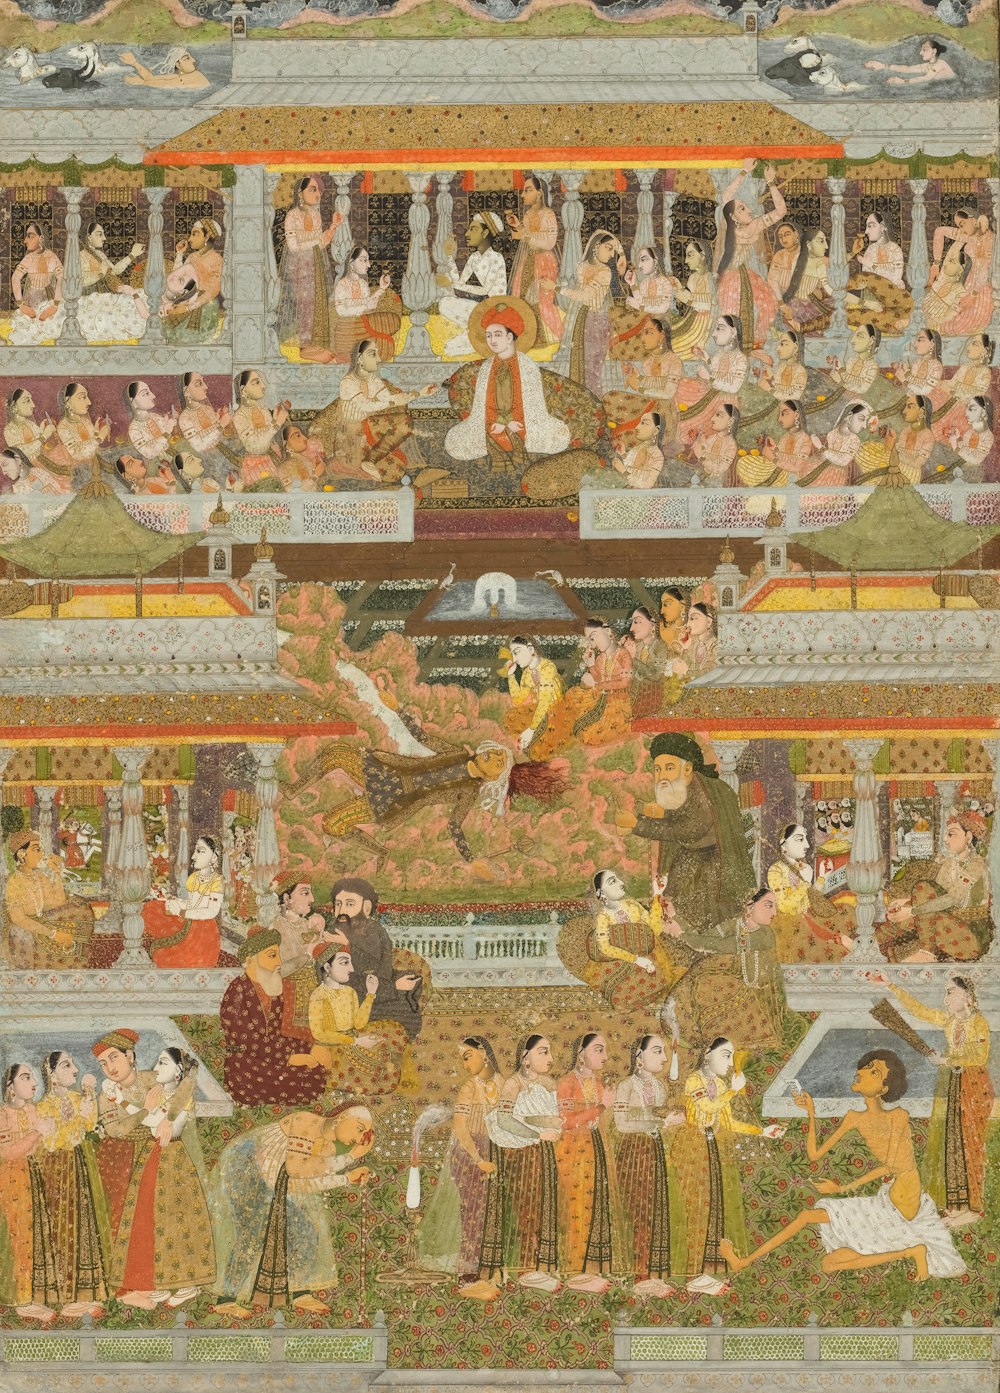 궁전에 있는 한 무리의 사람들 그림